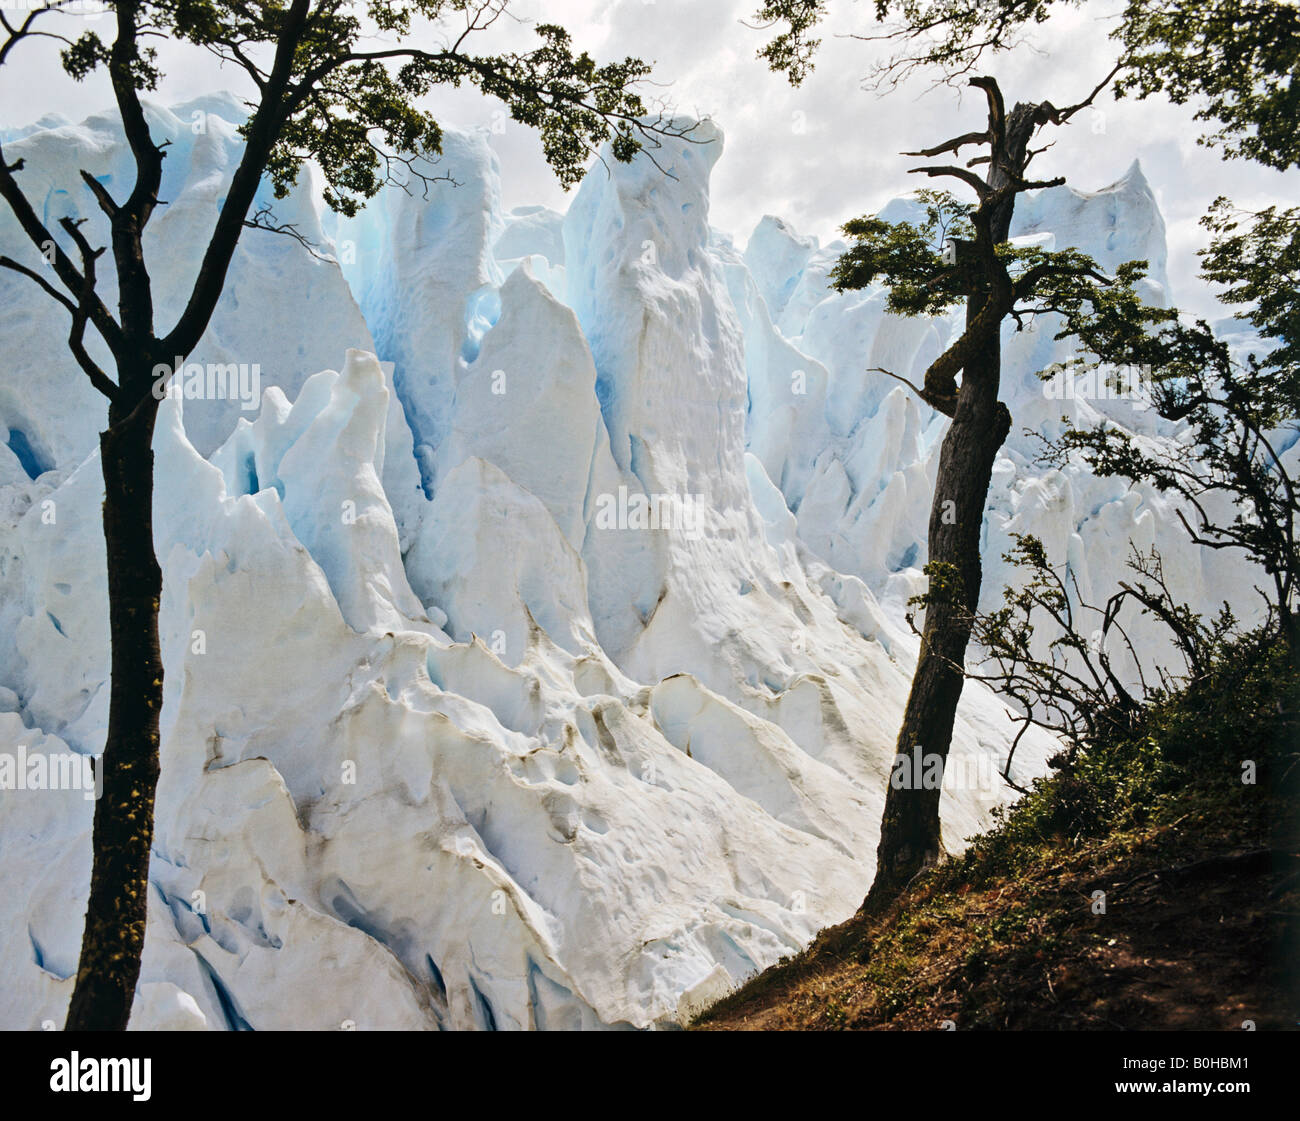 Perito Moreno Glacier, Campo de Hielo Sur, Andes, Patagonia, Argentina, South America Stock Photo